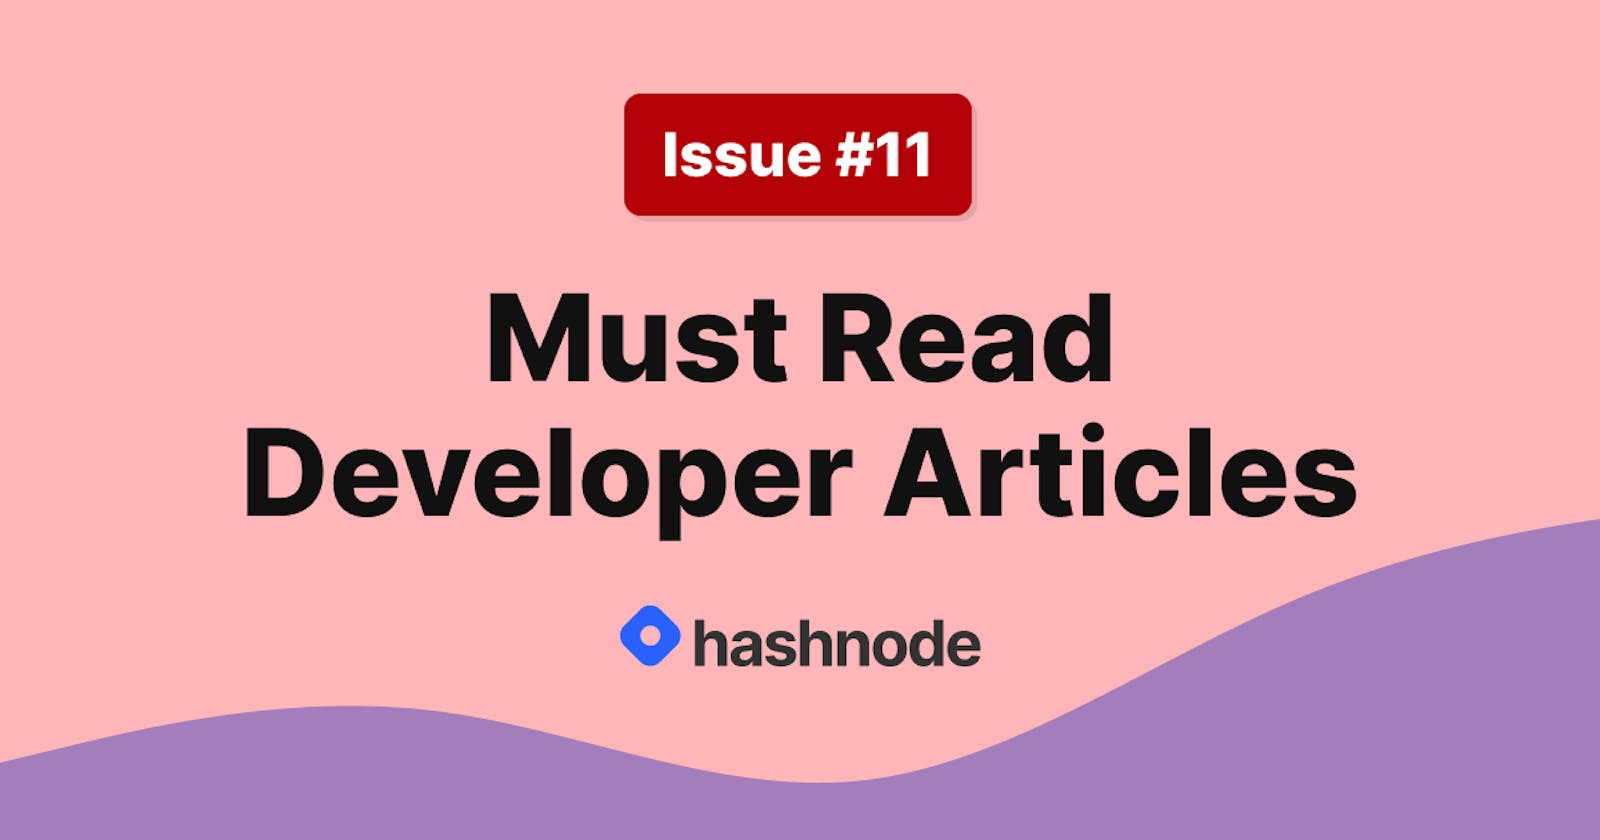 Must Read Developer Articles on Hashnode - #11